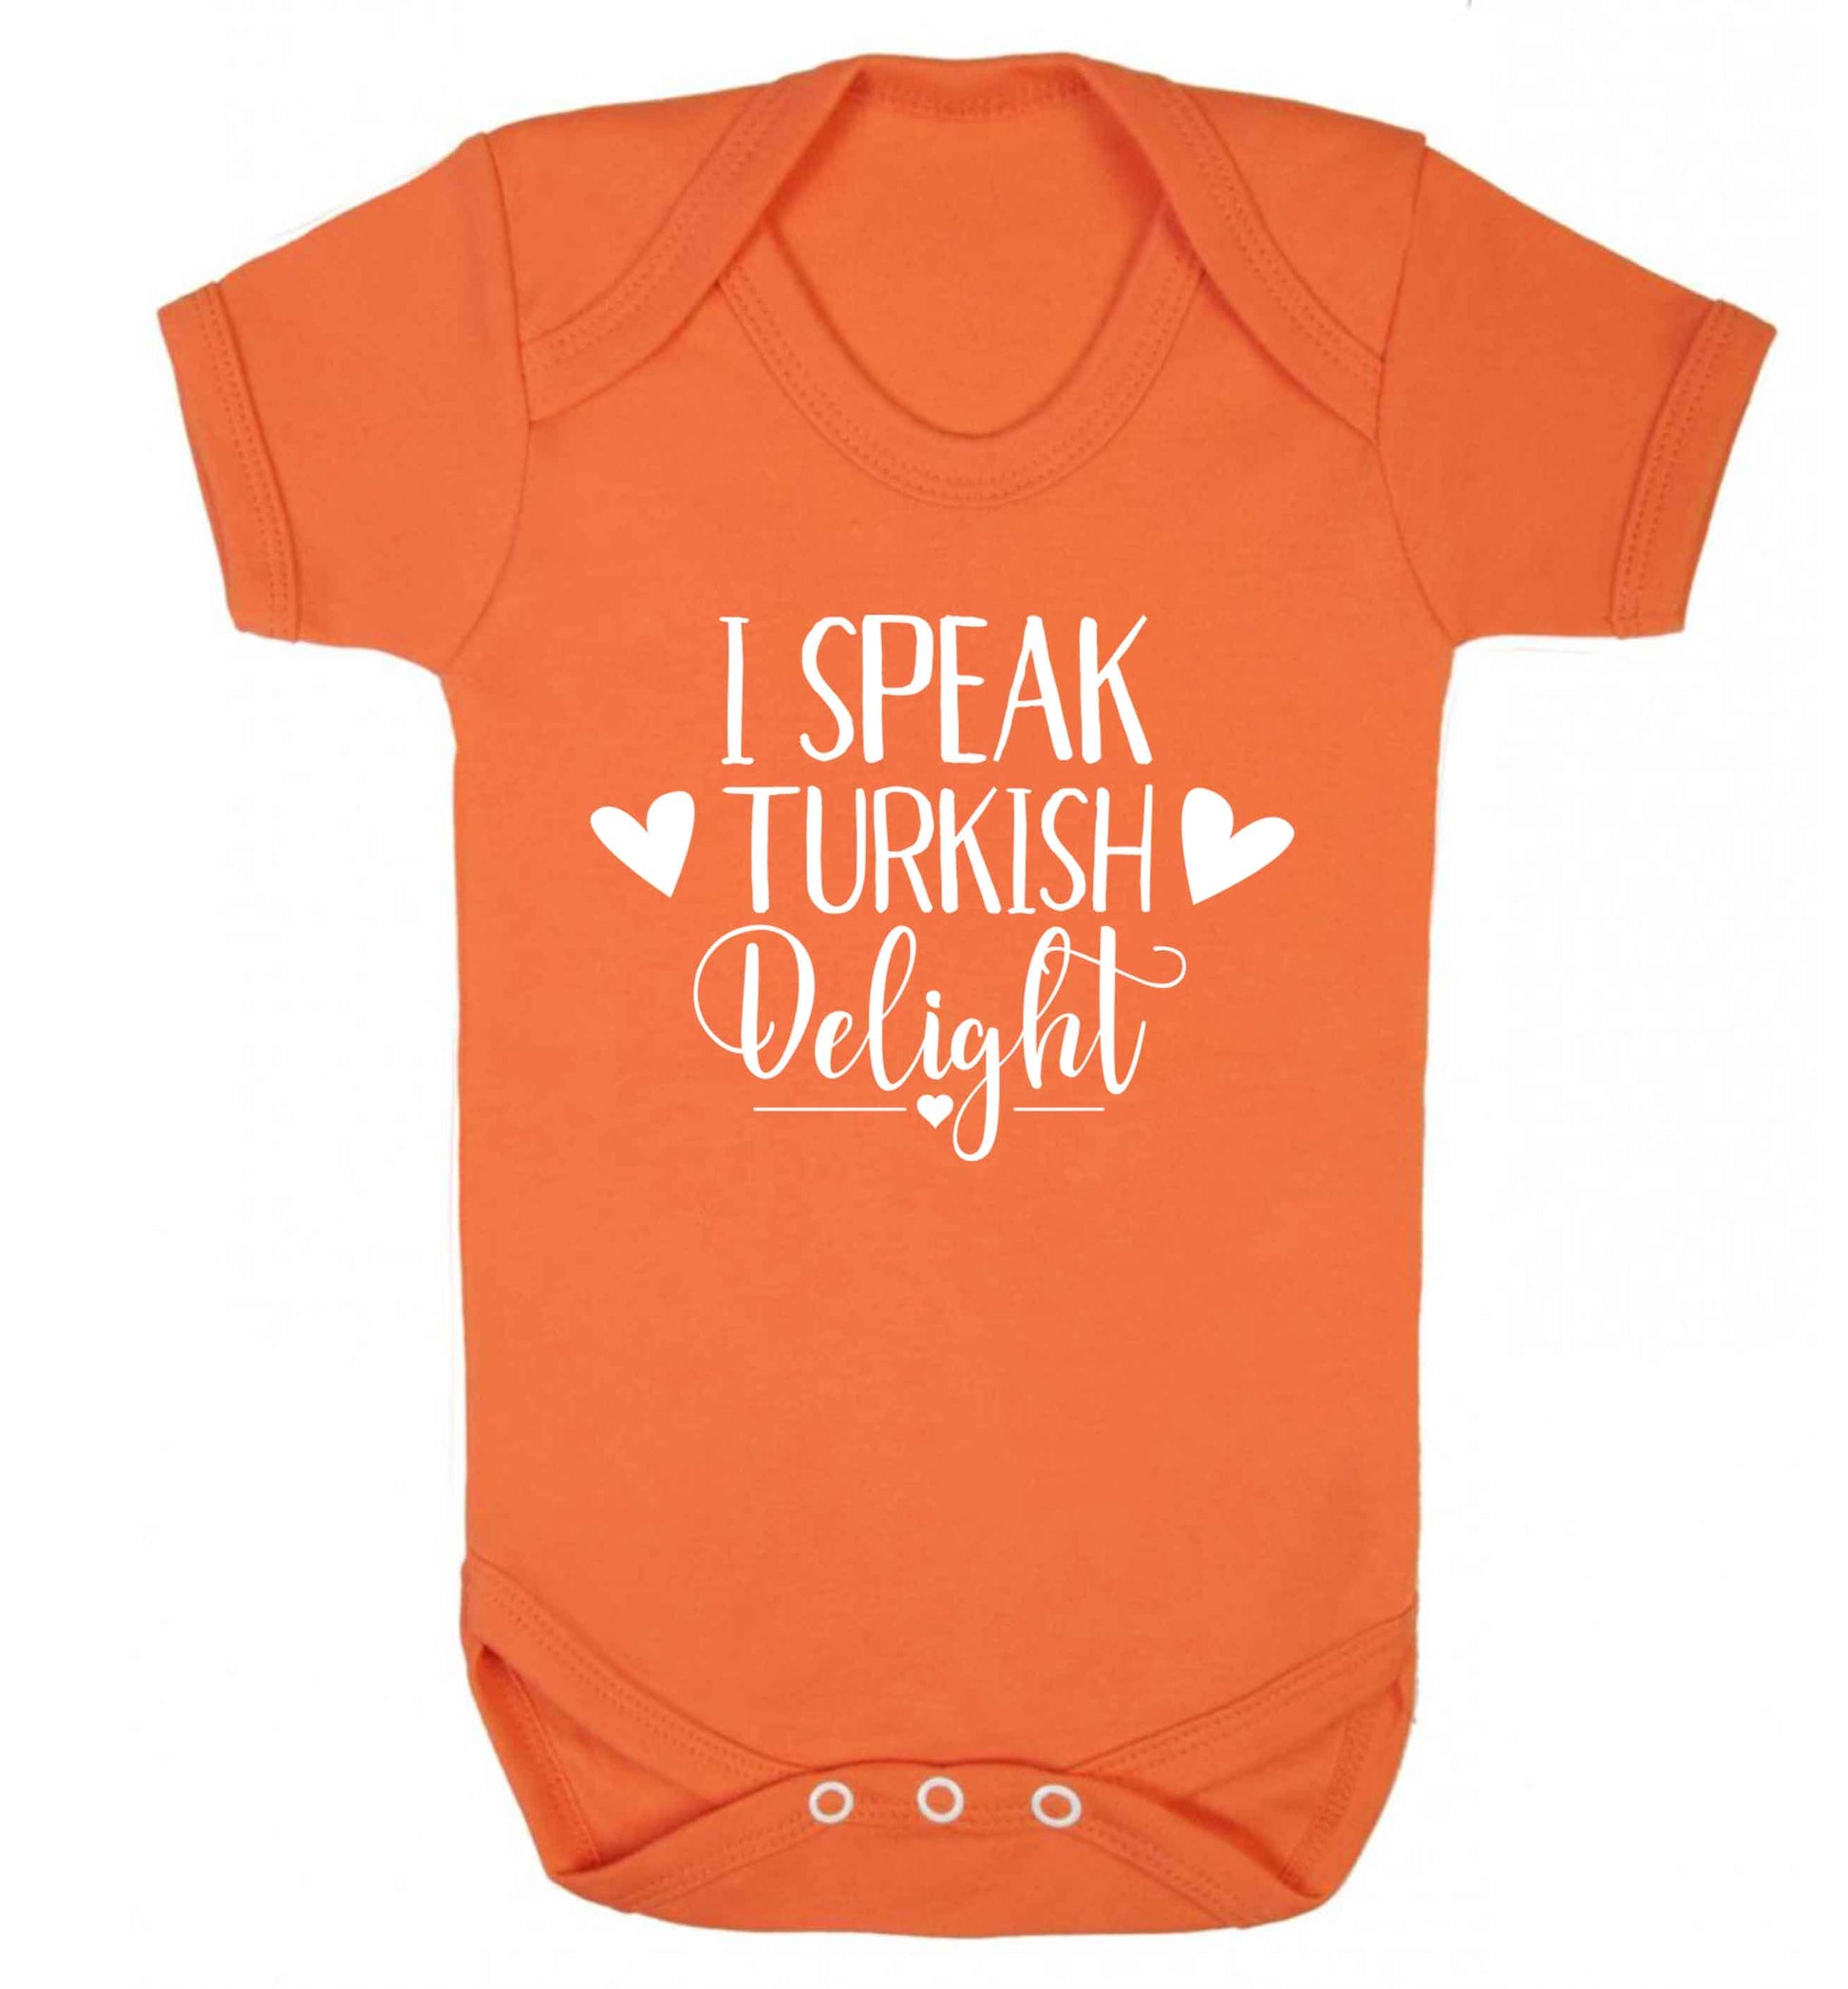 I speak turkish...delight Baby Vest orange 18-24 months